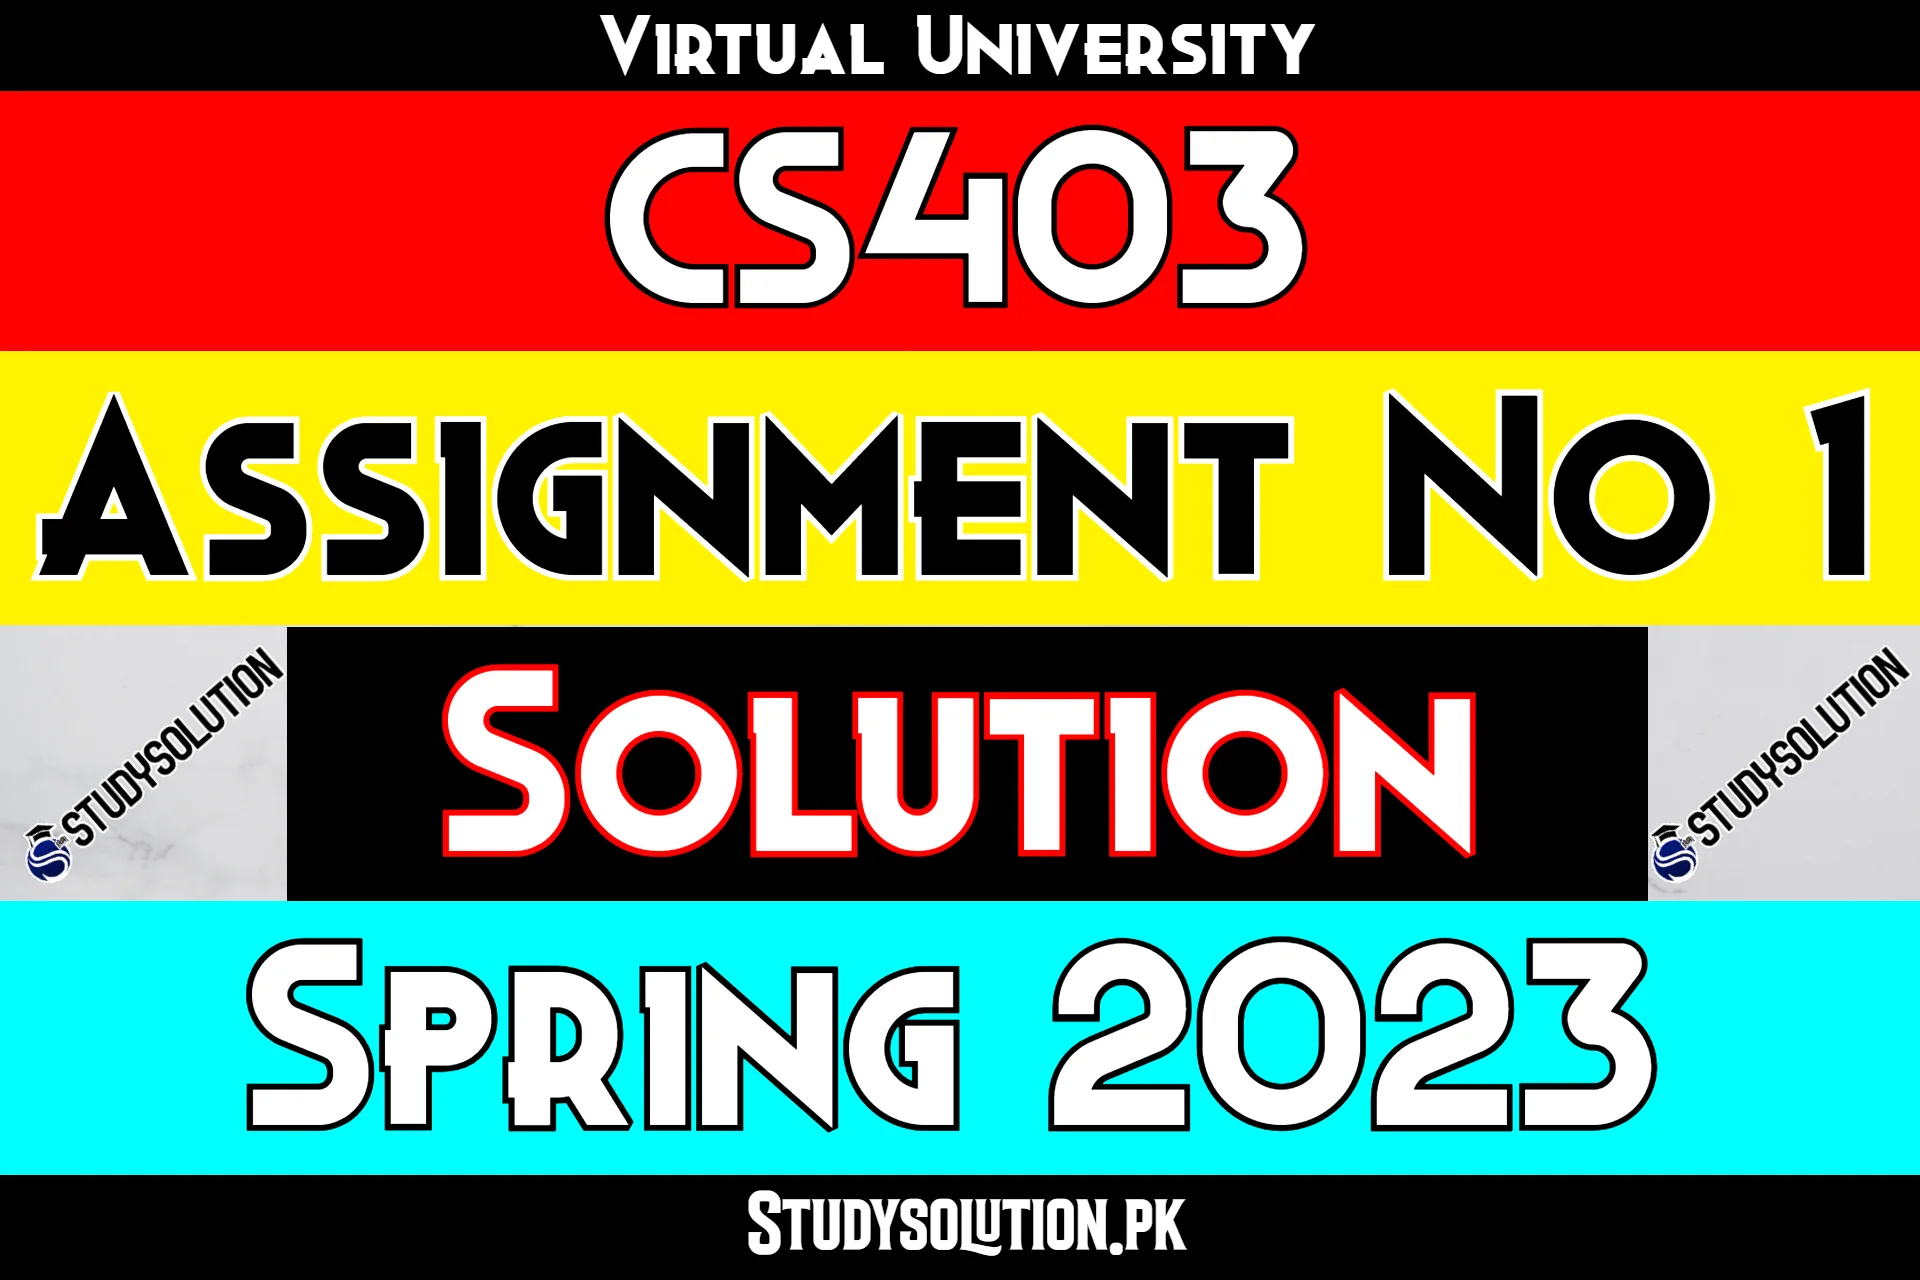 CS403 Assignment No 1 Solution Spring 2023